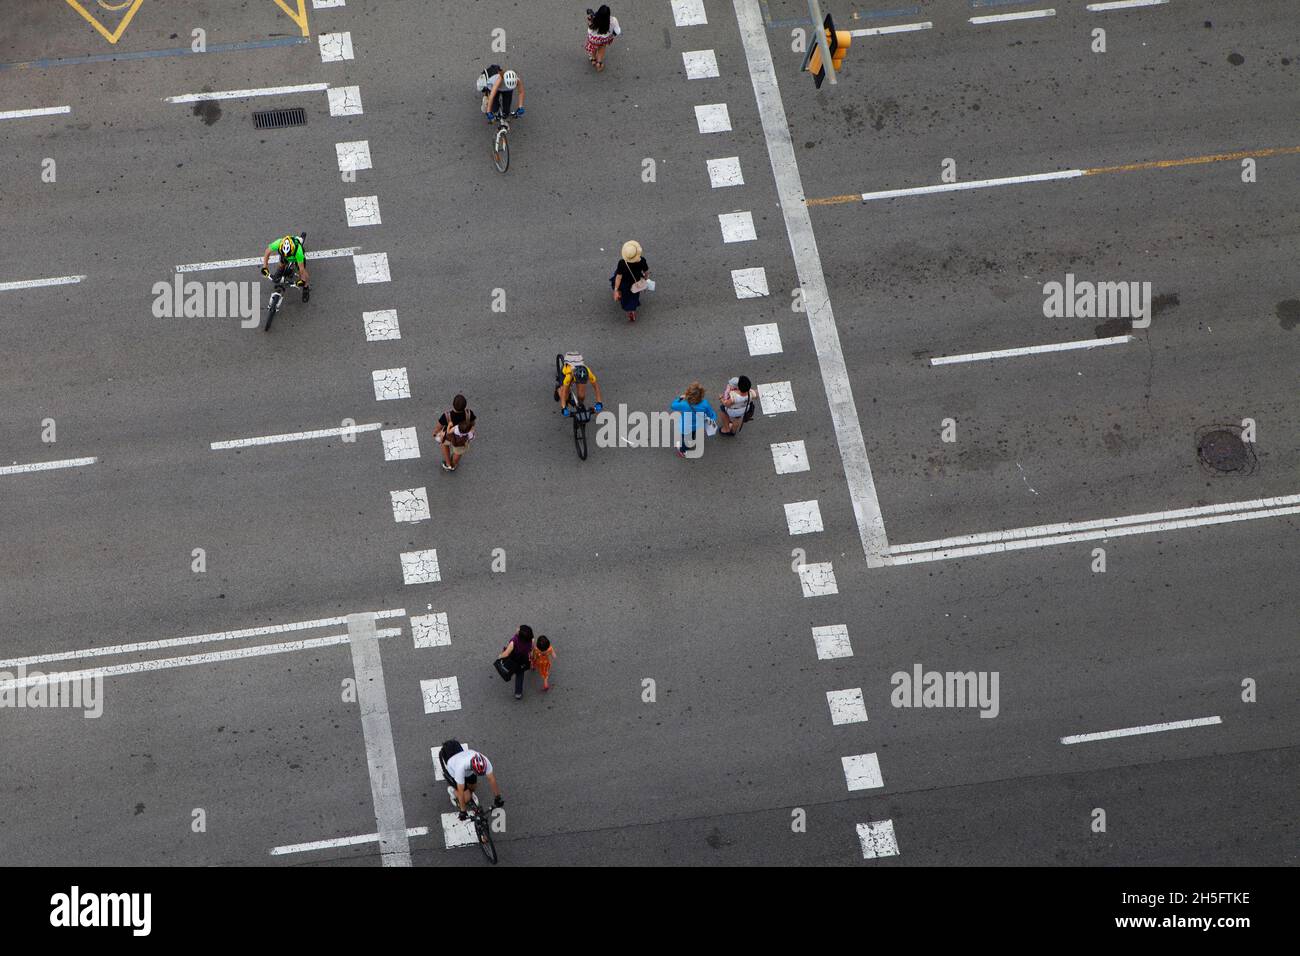 Fußgänger und Radfahrer (keine Erkennbarkeit) auf einer grauen Verkehrsstraße mit weißen gestrichelten Linien. Keine Autos (Autos. Carina) Aus der Vogelperspektive. Foto Stock